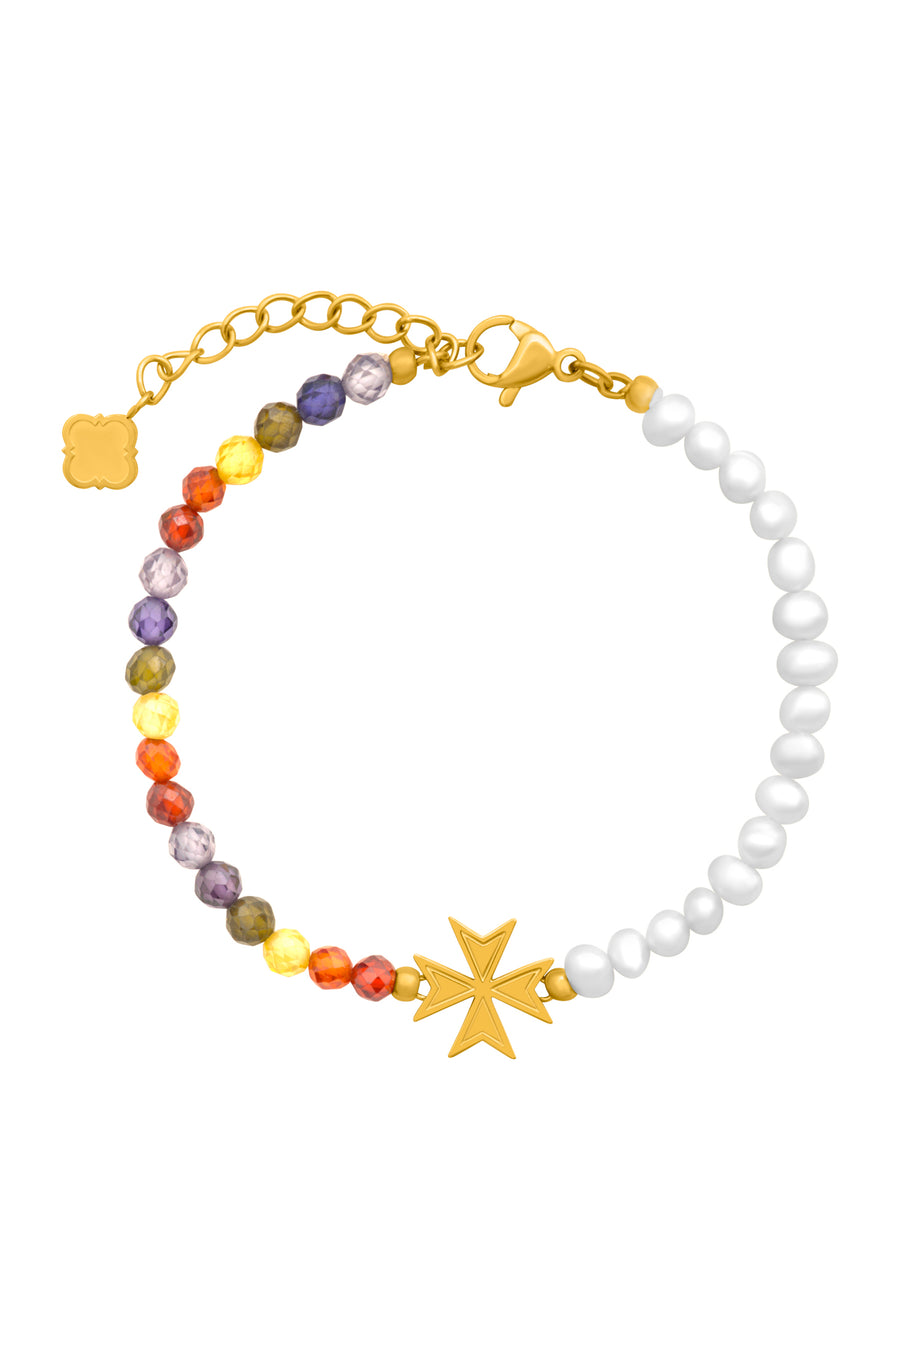 Freshwater Pearl & Beads Maltese Cross Bracelet